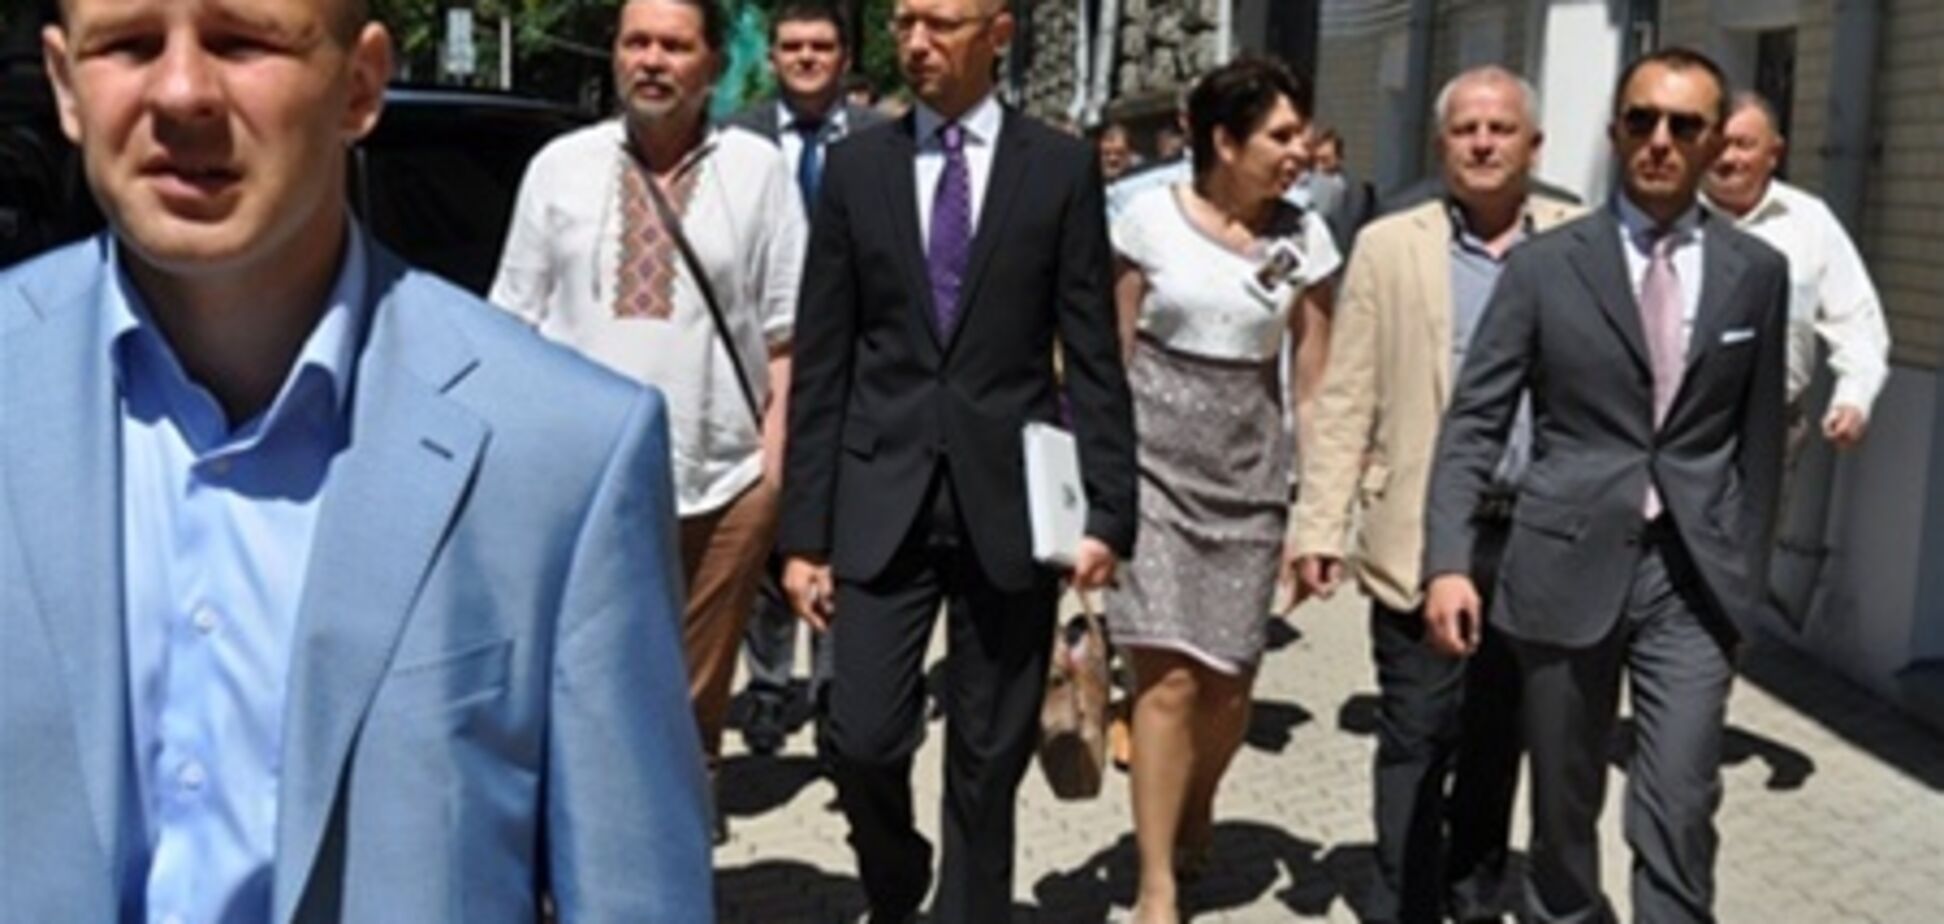 Яценюк прийшов на зустріч з Президентом зі списком вимог